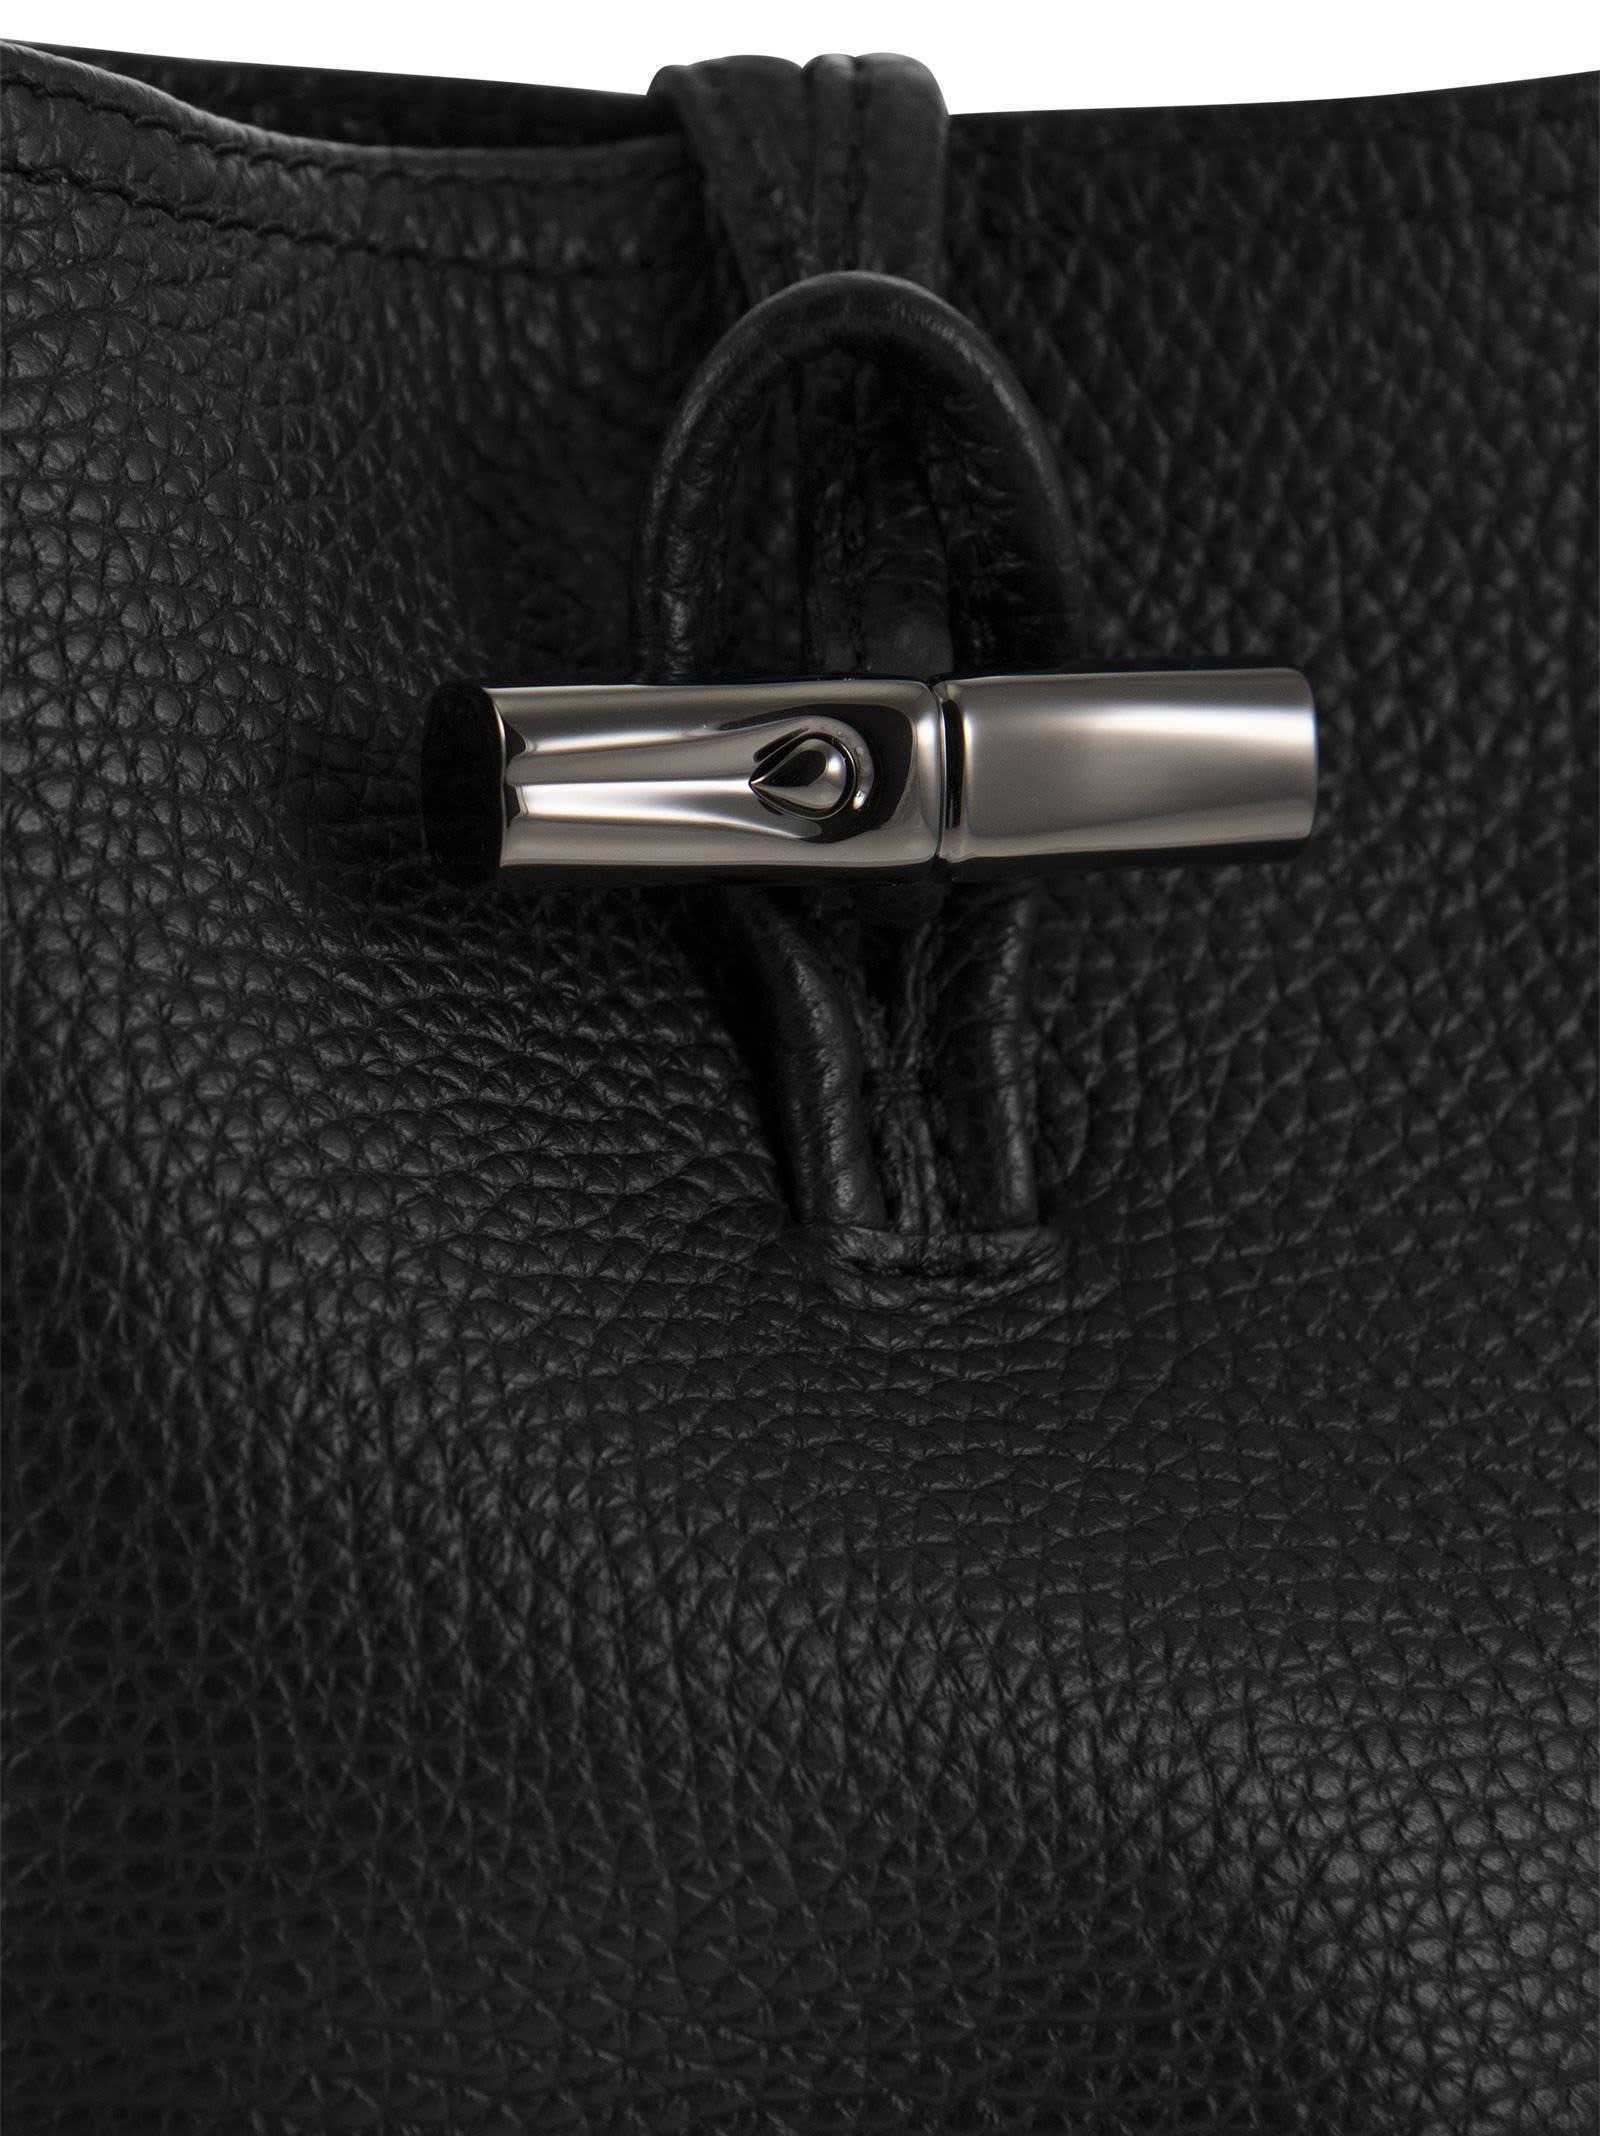 Longchamp Roseau Essential Hobo Bag in Gray